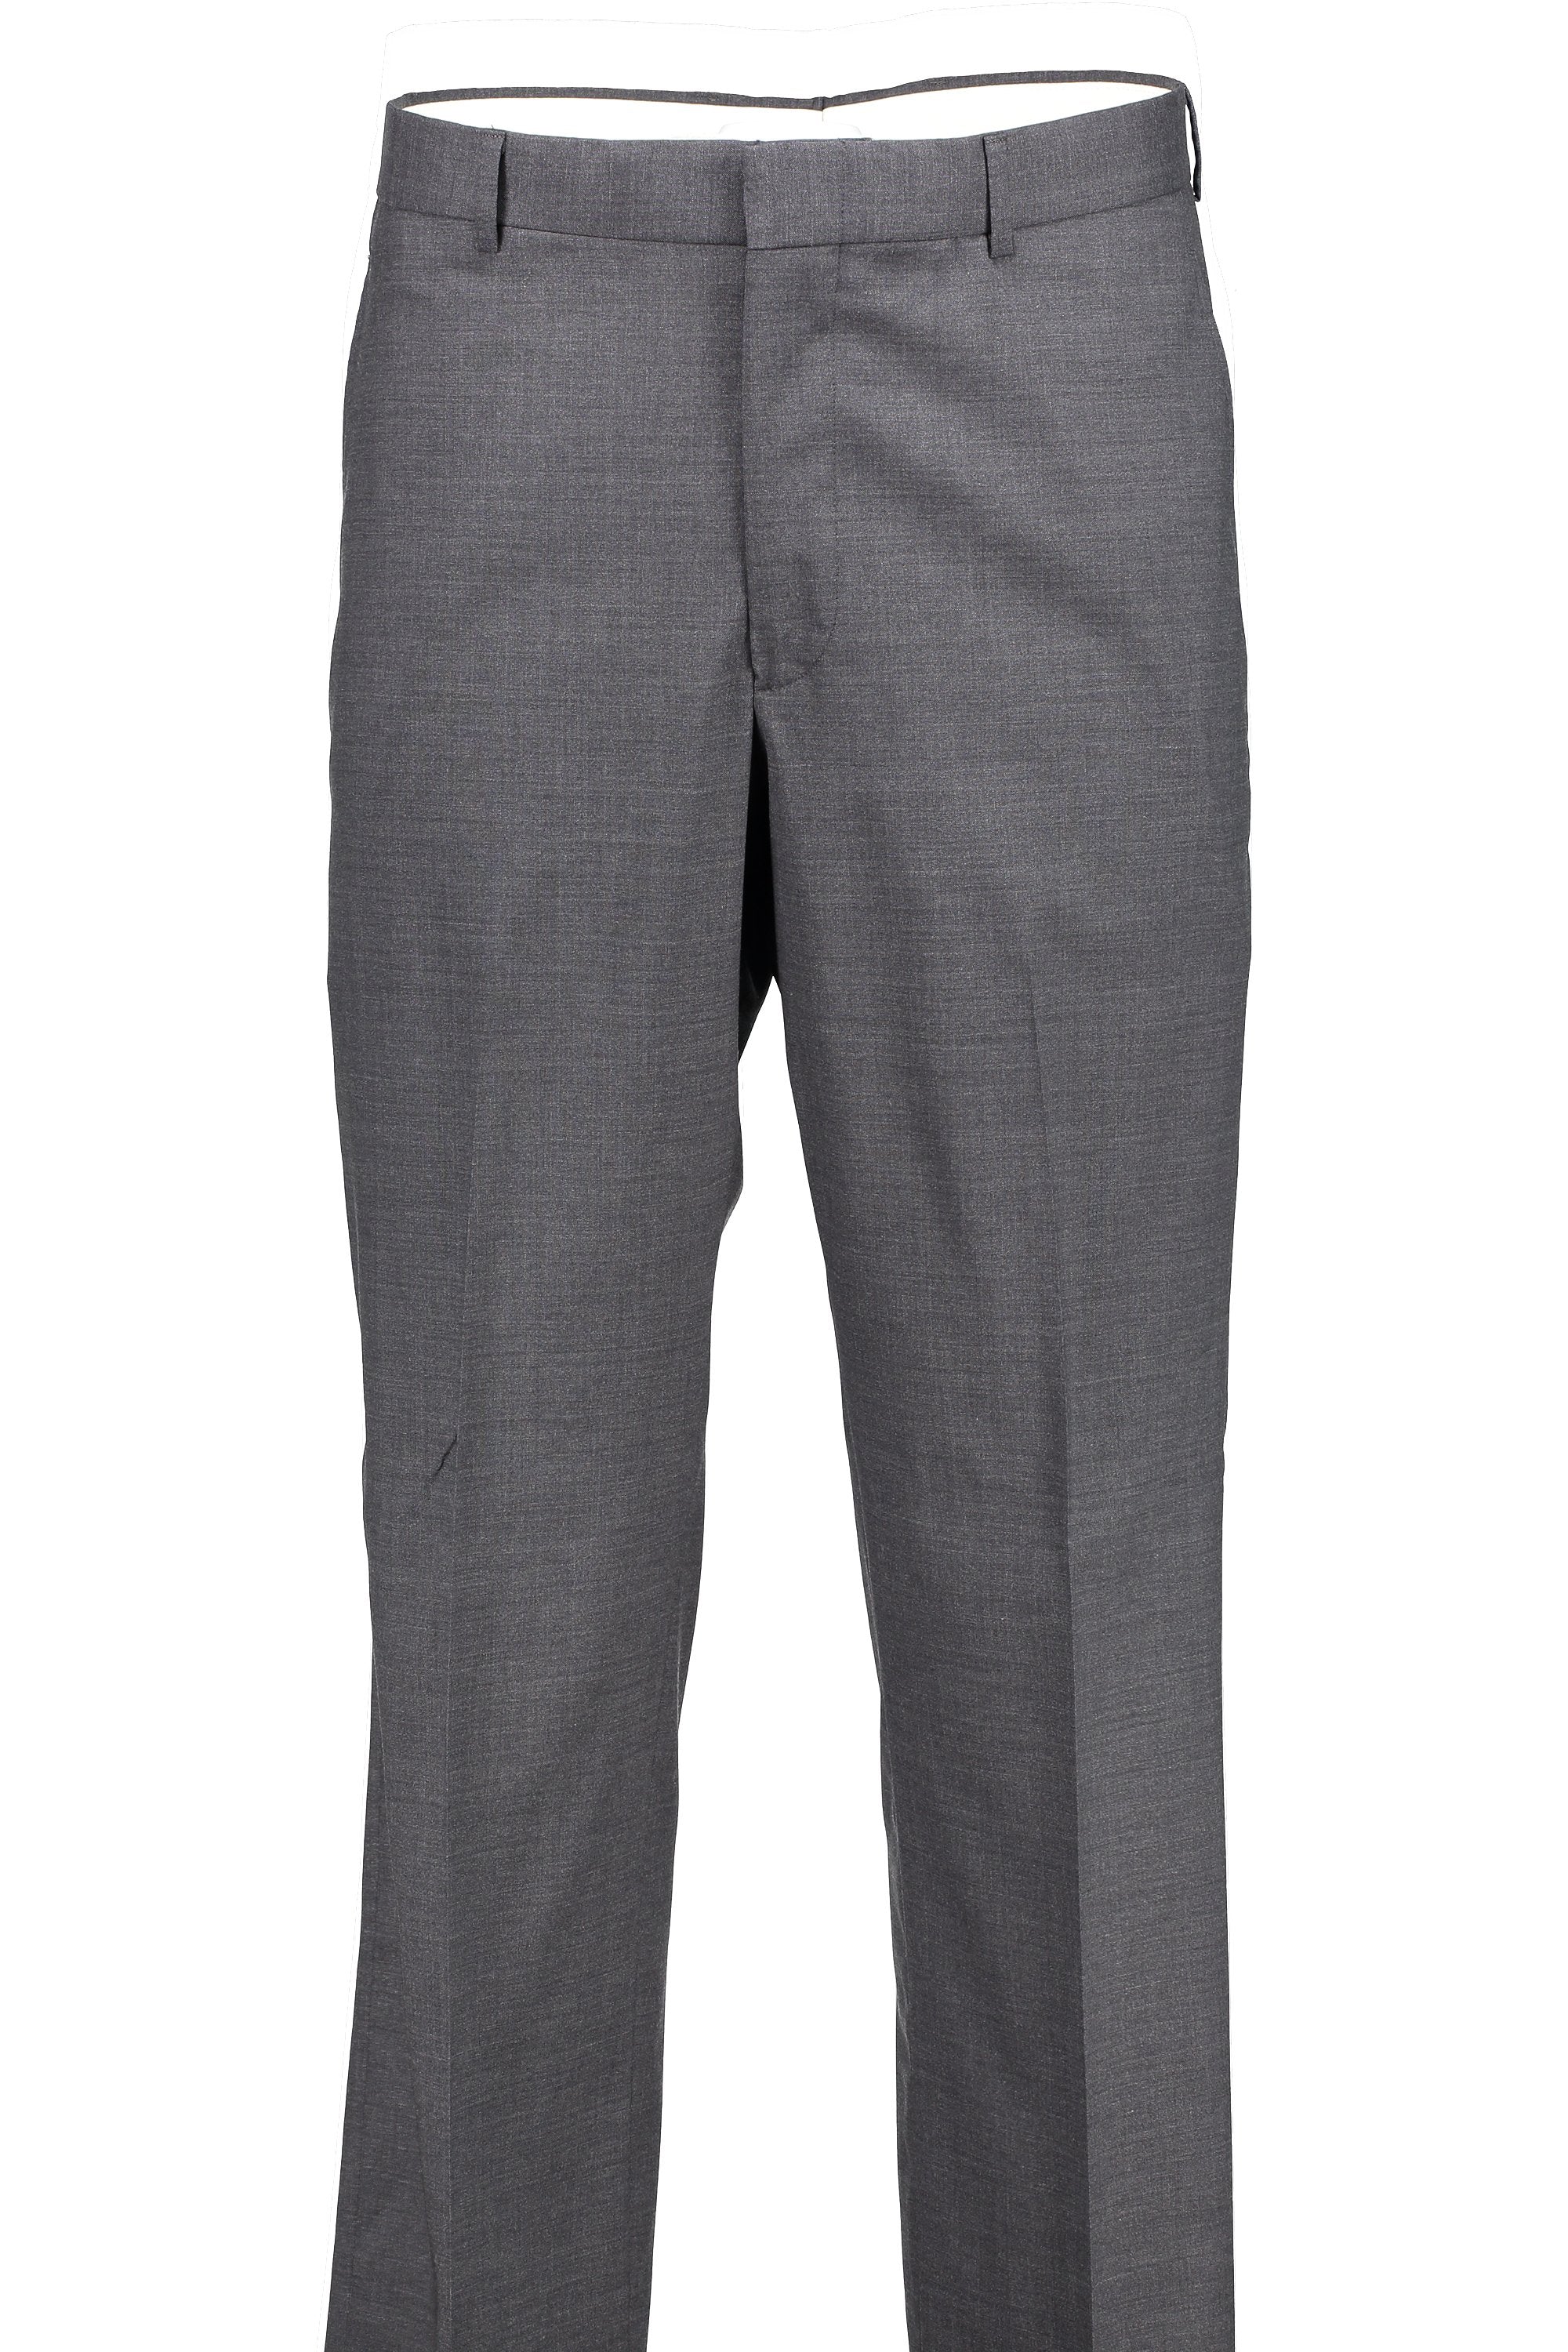 Men's Suit Separates Flat Front Pant Classic Cut - MED GREY 98/2 WOOL/LYCRA SUPER100